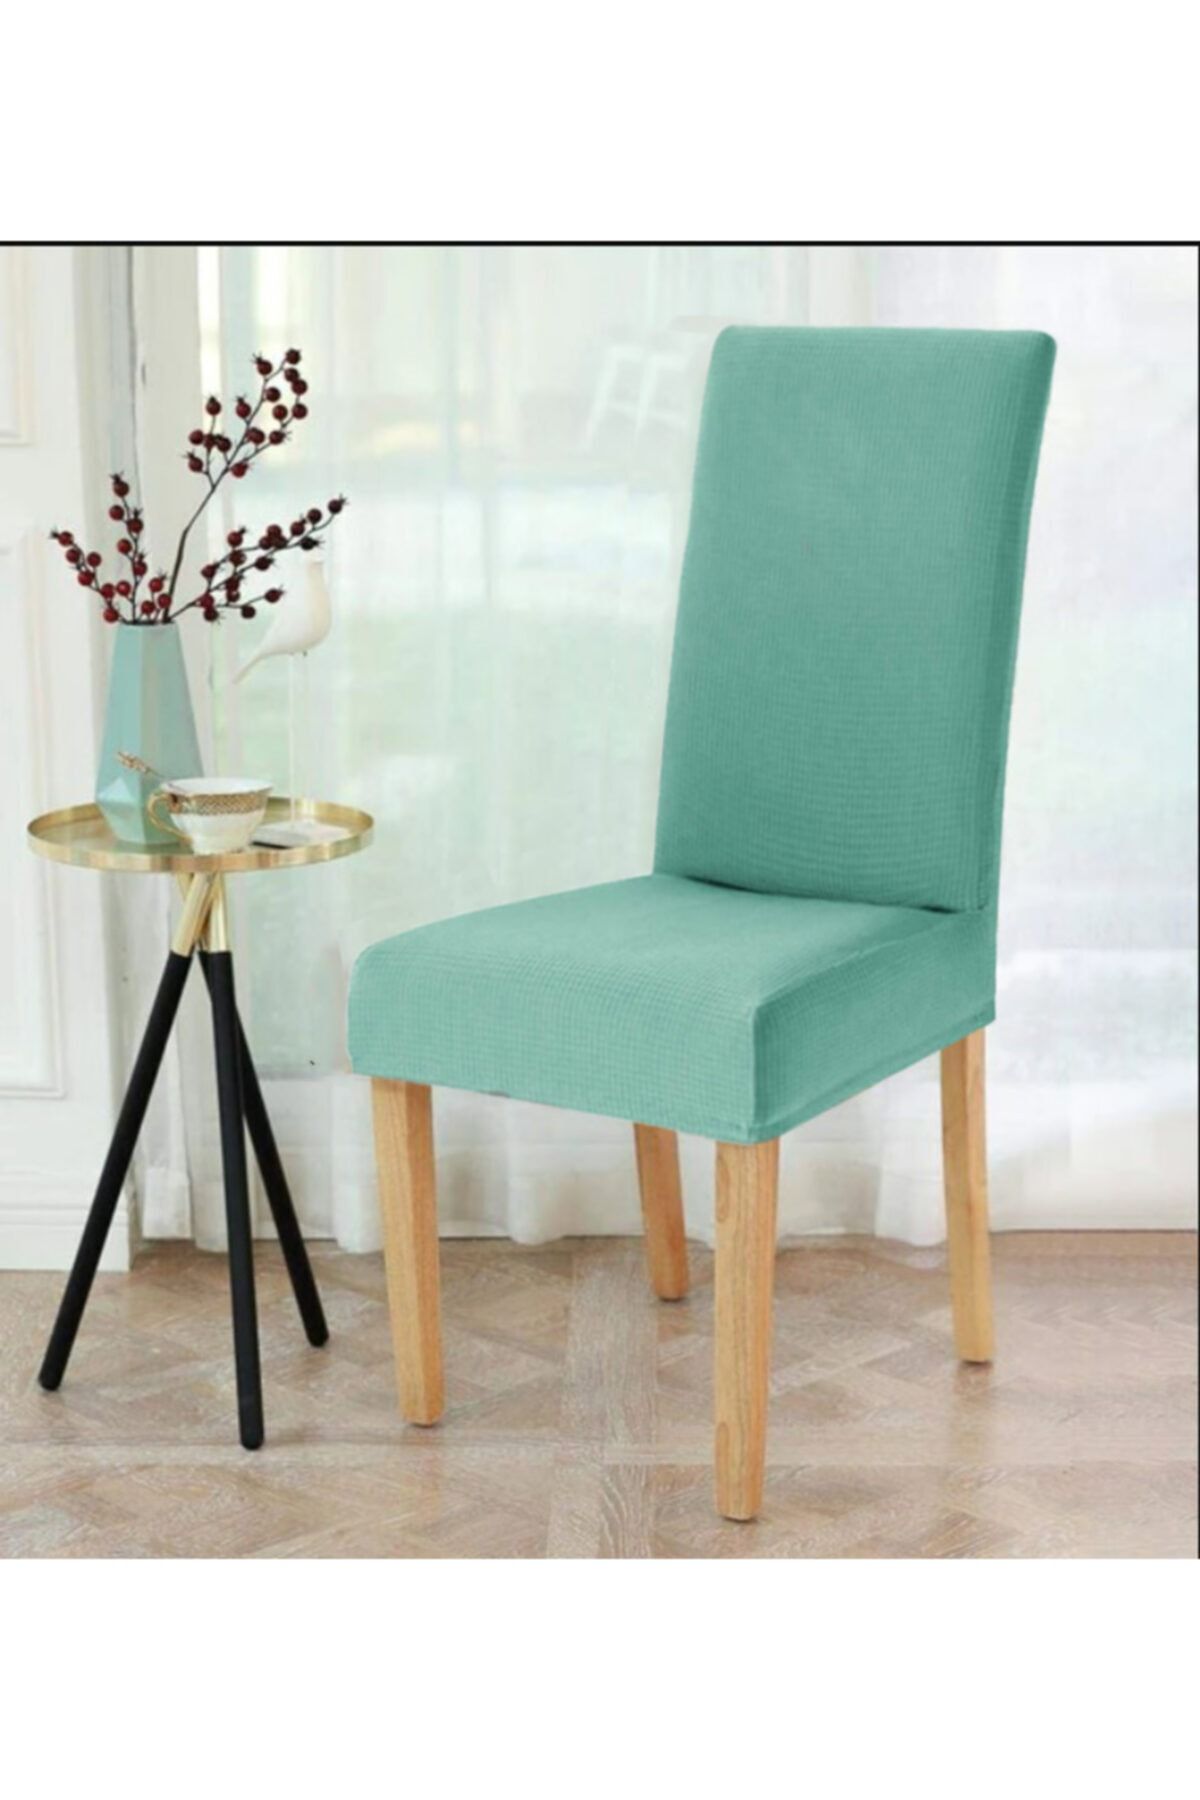 elgeyar Likrali Sandalye Örtüsü, Sandalye Kılıfı, Lastikli ,standart (1 ADET)yeşil